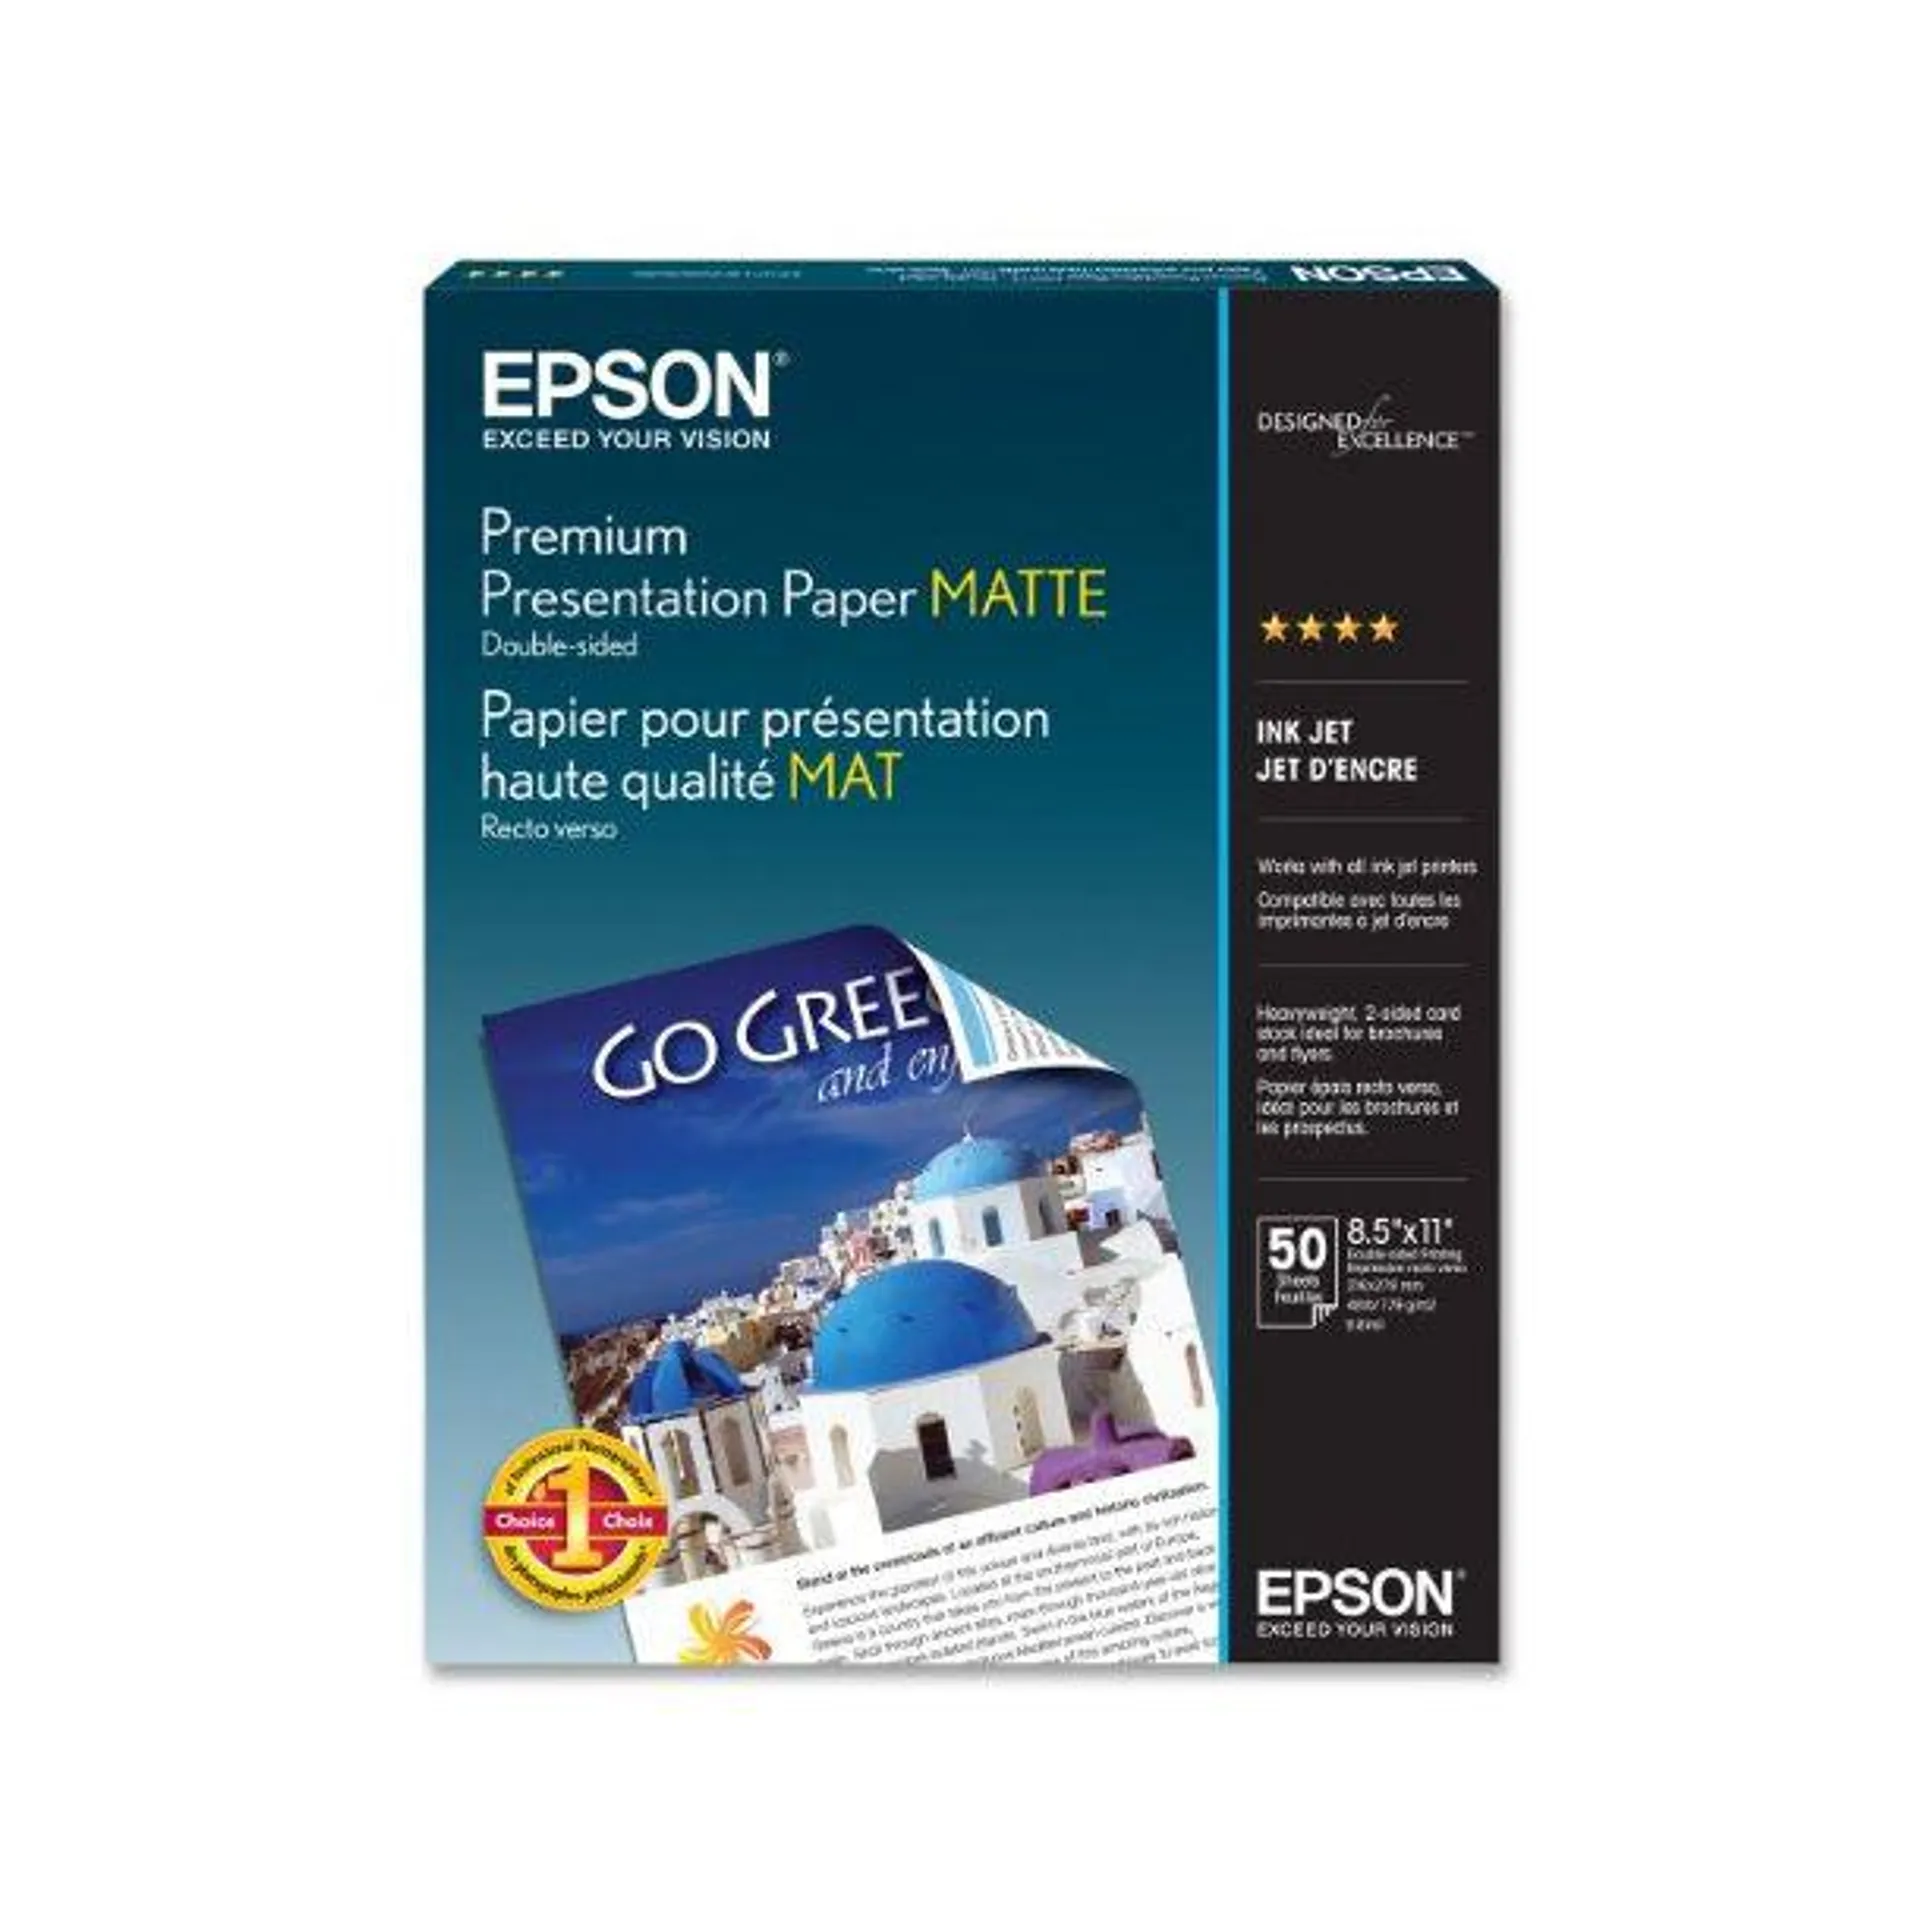 Epson Premium 8.5" x 11" Presentation Photo Paper (50-Sheets) - White